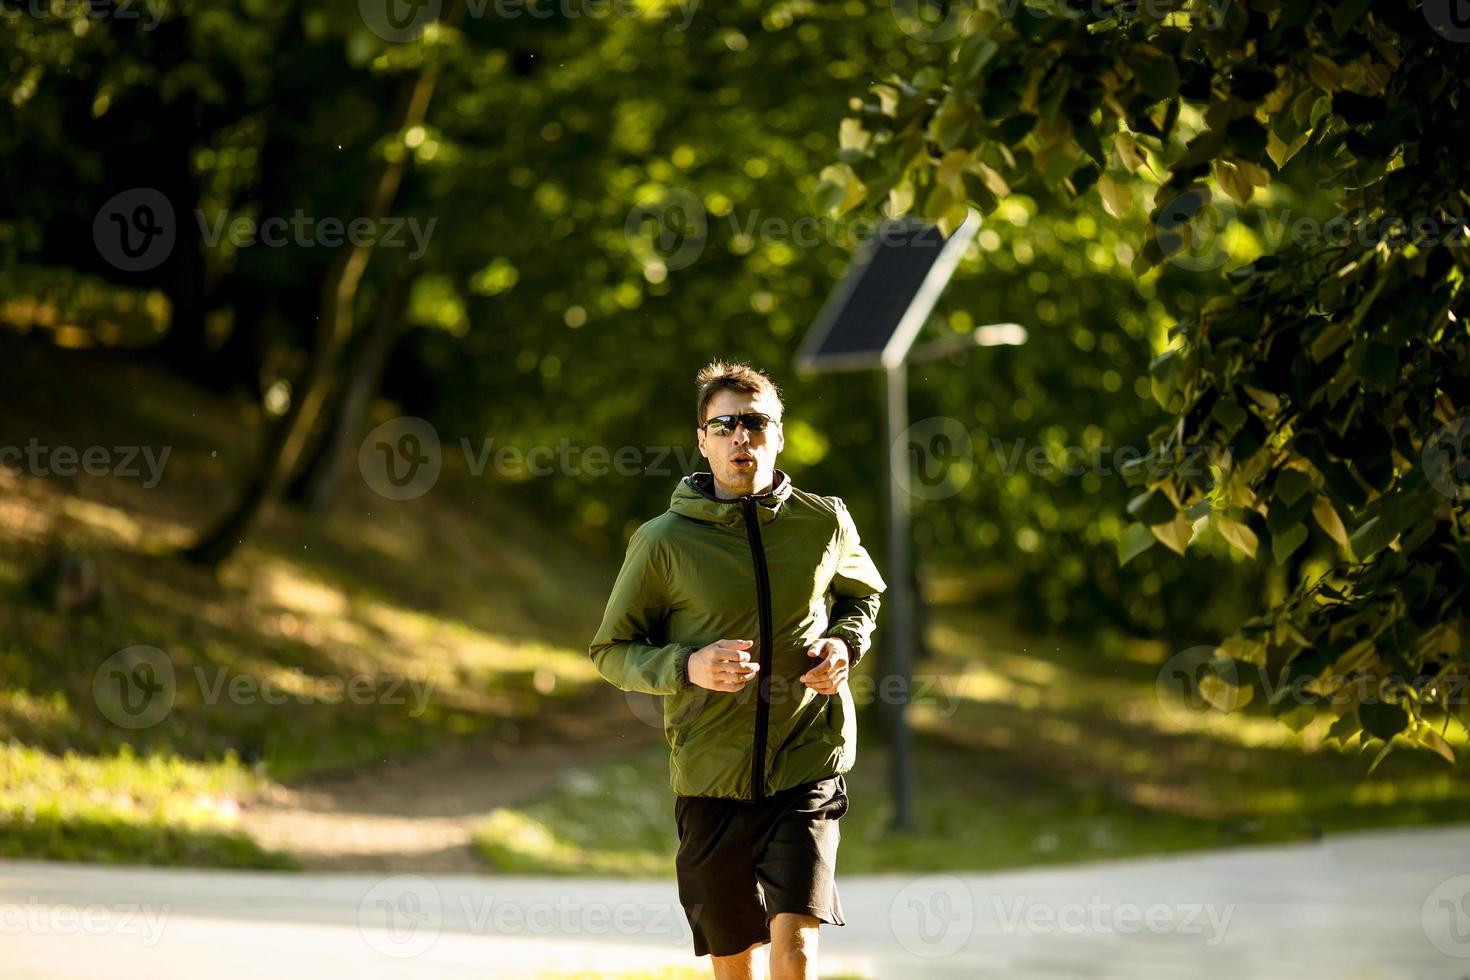 jovem atlético correndo enquanto faz exercícios no parque verde ensolarado foto